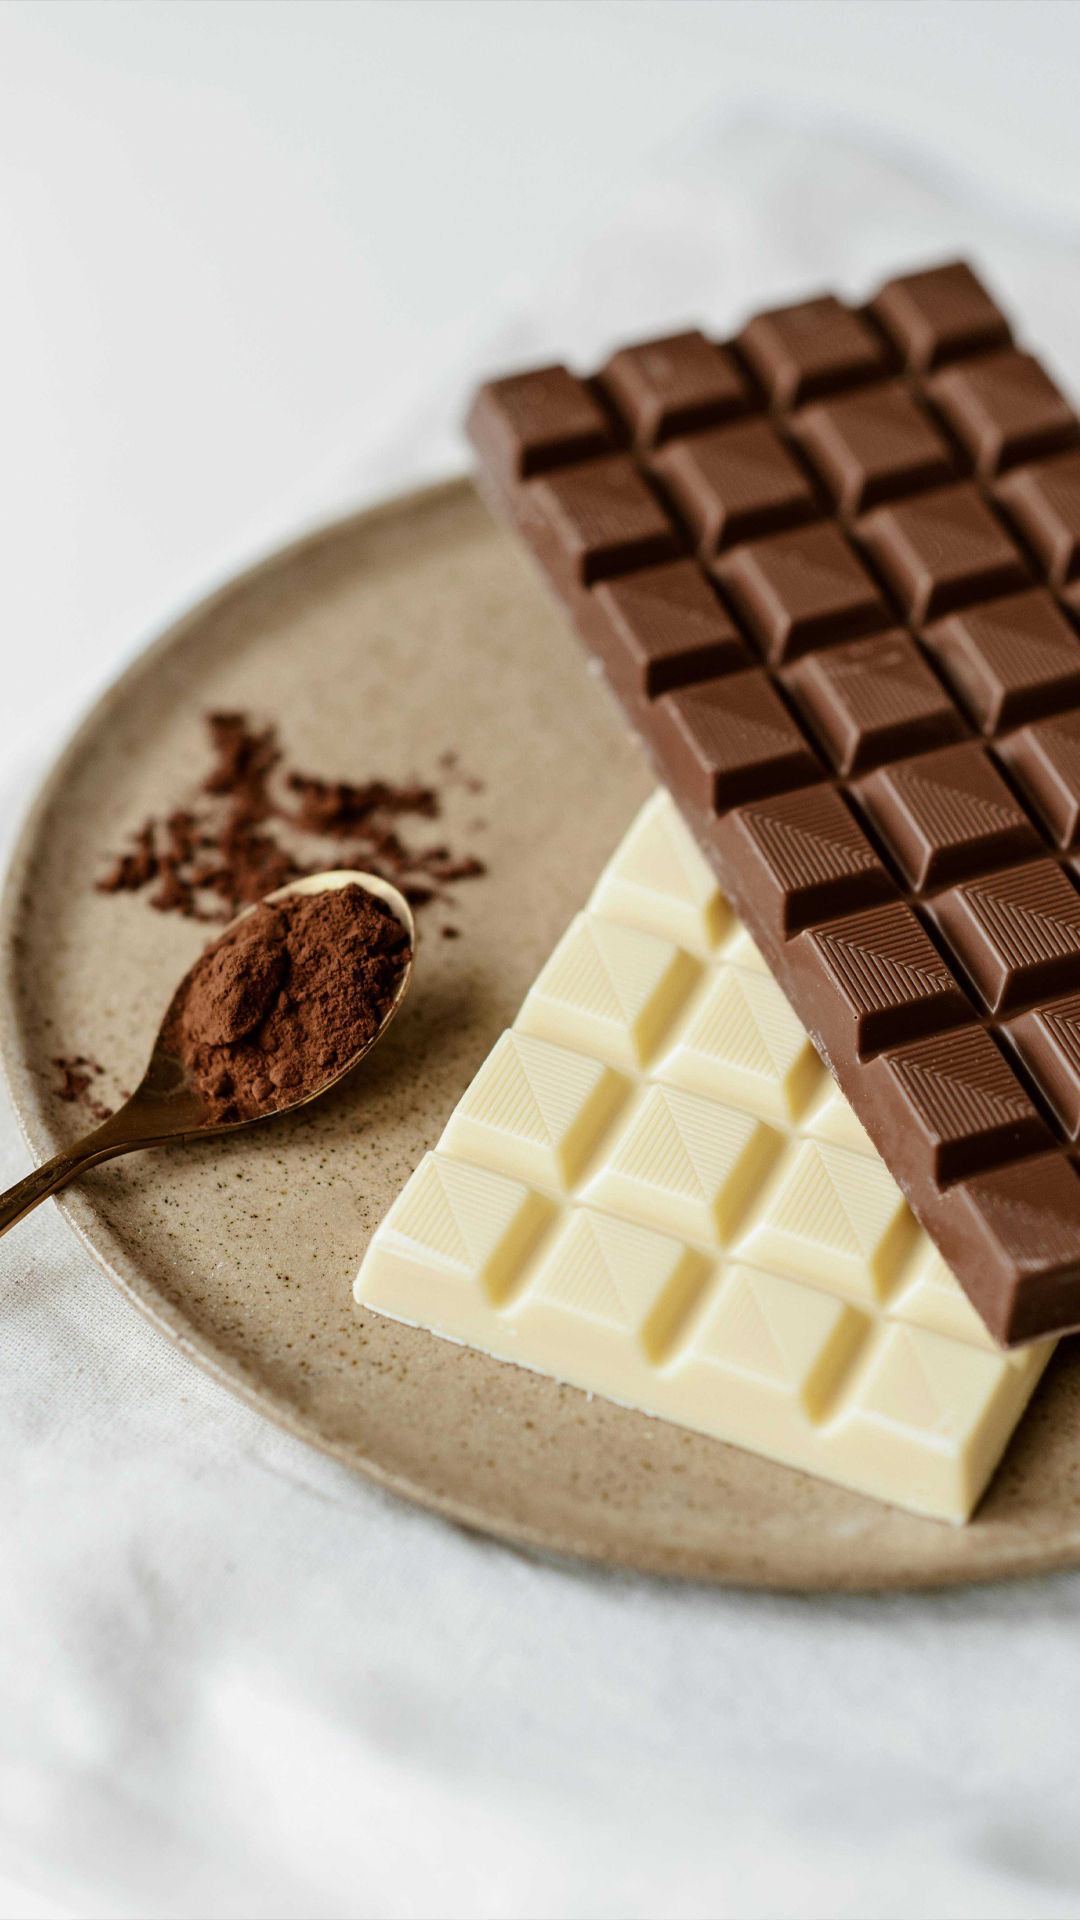 डार्क चॉकलेट खाना सेहत के लिए कितना फायदेमंद?